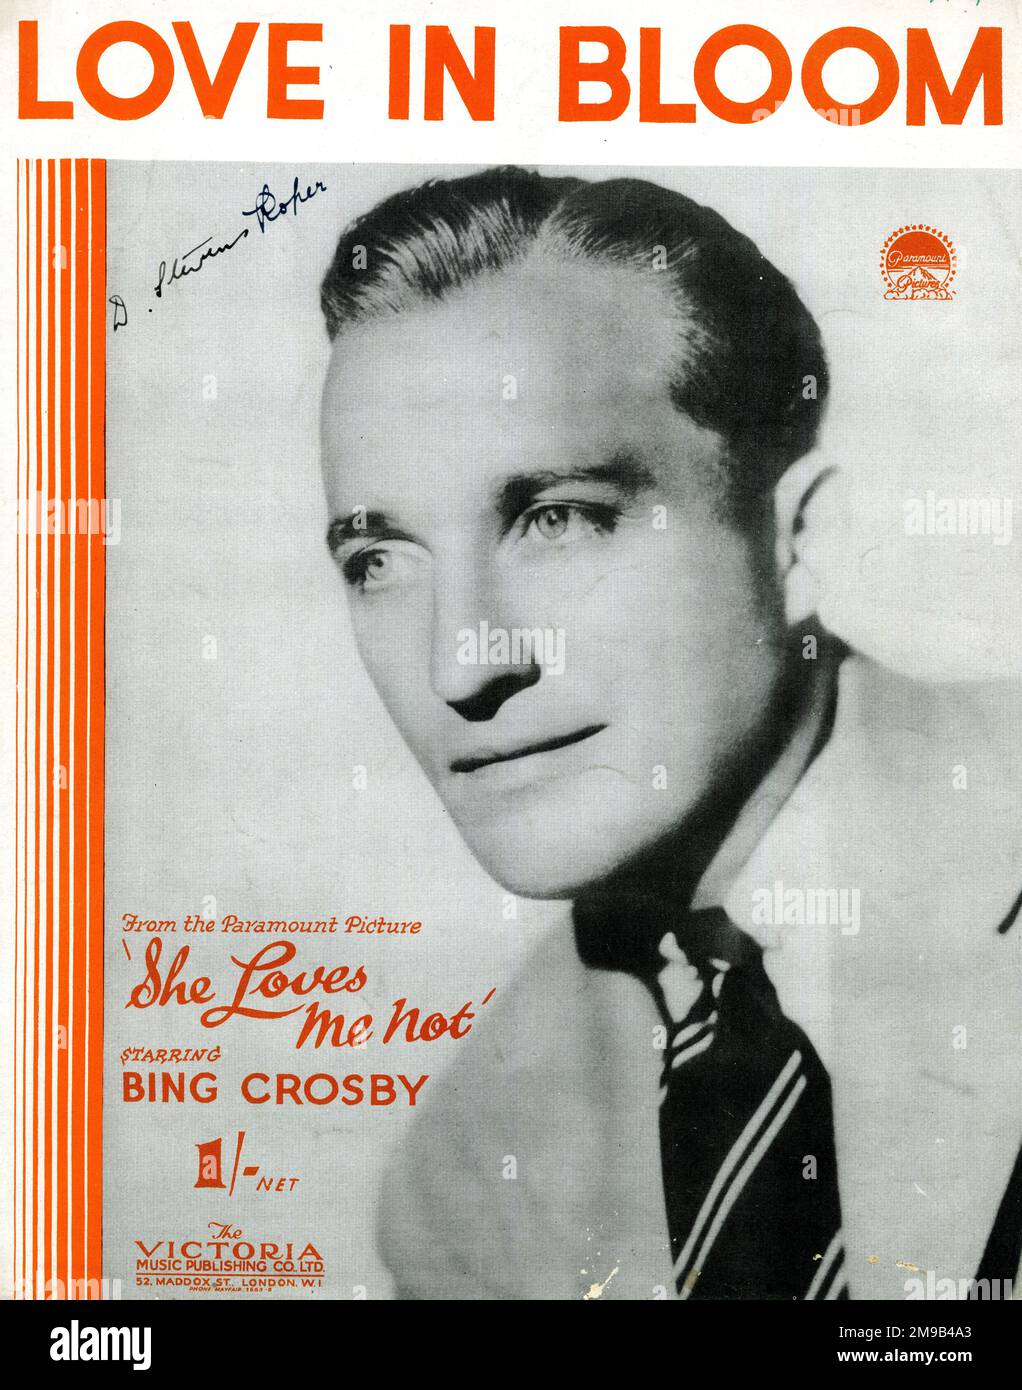 Titelbild "Love in Bloom" aus "The Paramount Picture, sie liebt mich nicht" mit Bing Crosby. Stockfoto